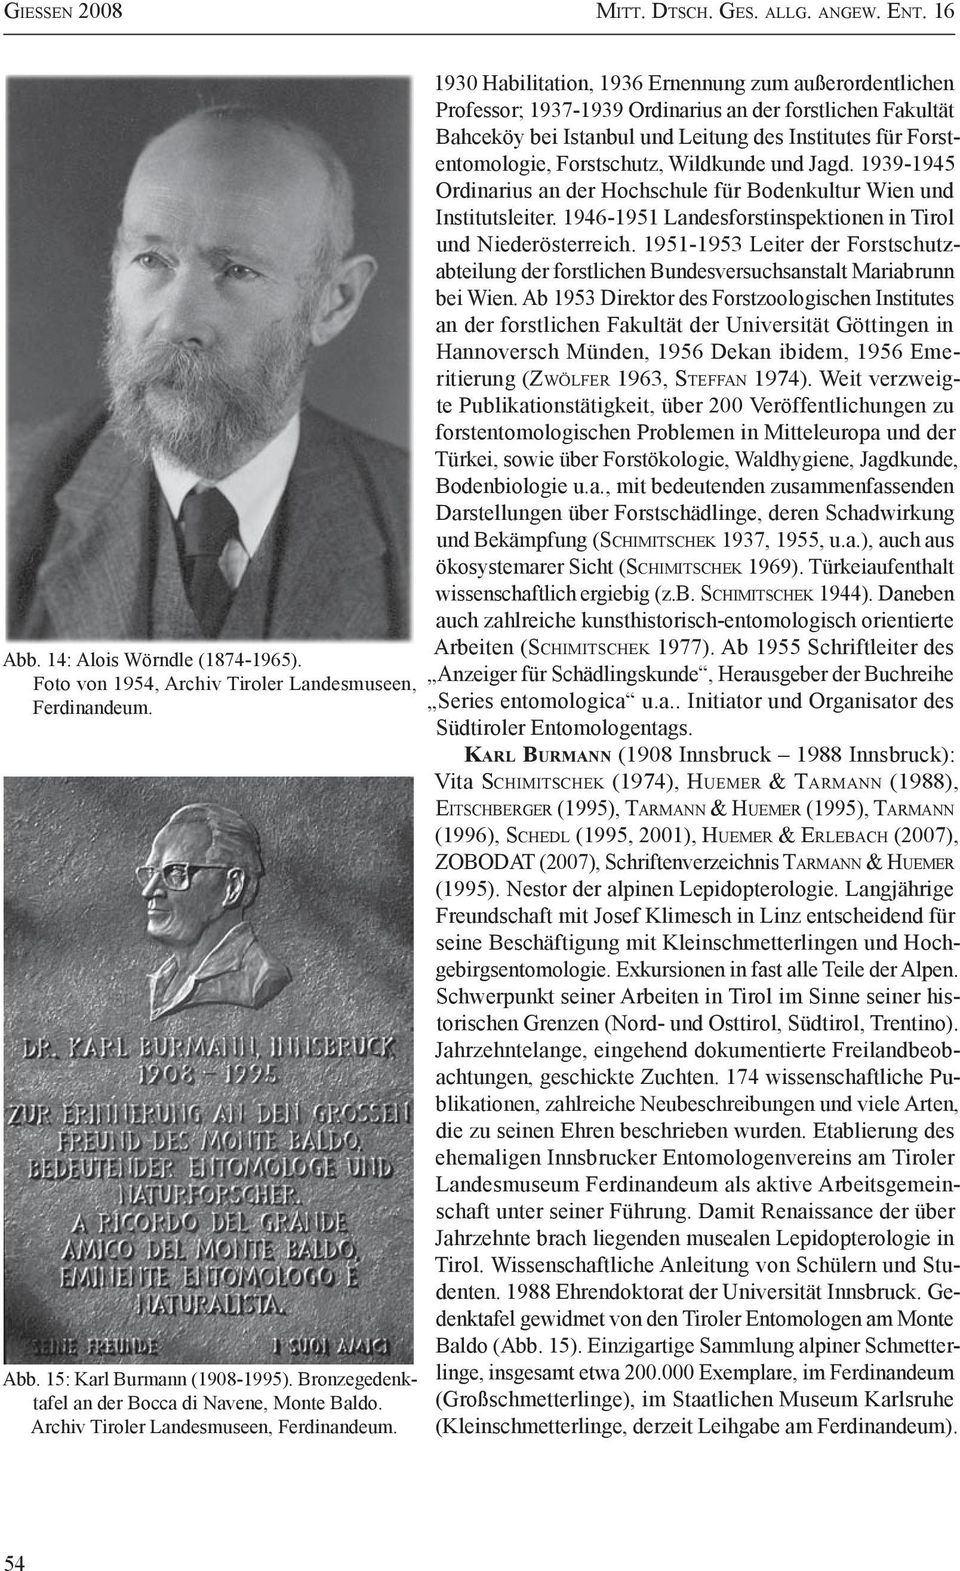 1930 Habilitation, 1936 Ernennung zum außer ordentlichen Professor; 1937-1939 Ordinarius an der fors tlichen Fakultät Bahceköy bei Istanbul und Leitung des Institutes für Forstentomologie,